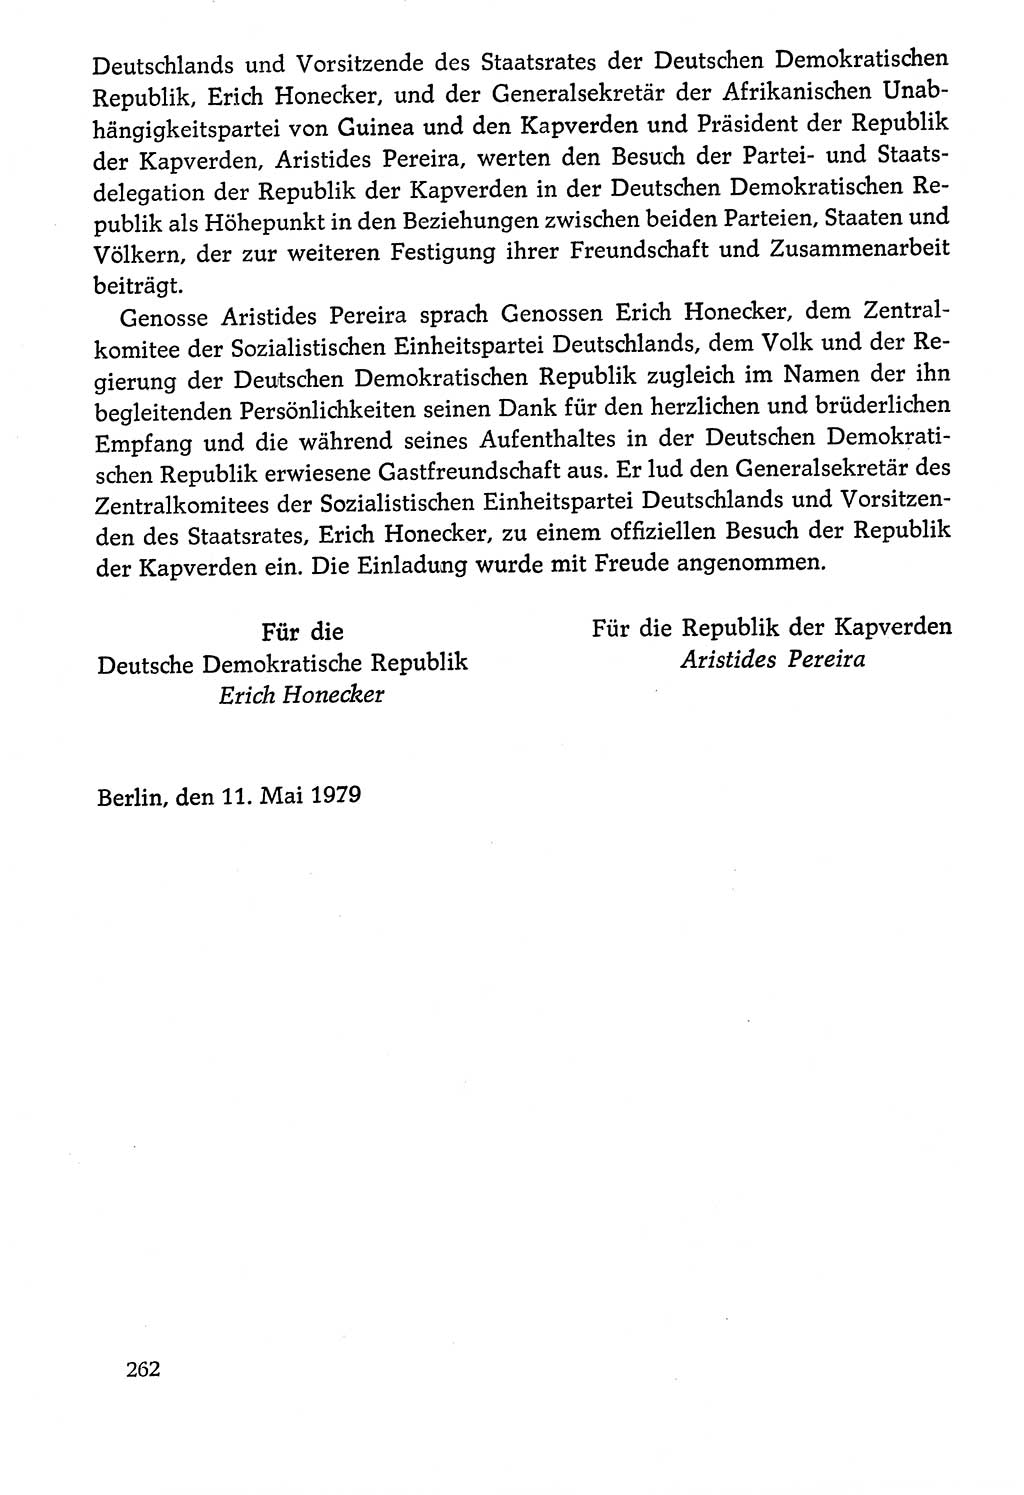 Dokumente der Sozialistischen Einheitspartei Deutschlands (SED) [Deutsche Demokratische Republik (DDR)] 1978-1979, Seite 262 (Dok. SED DDR 1978-1979, S. 262)